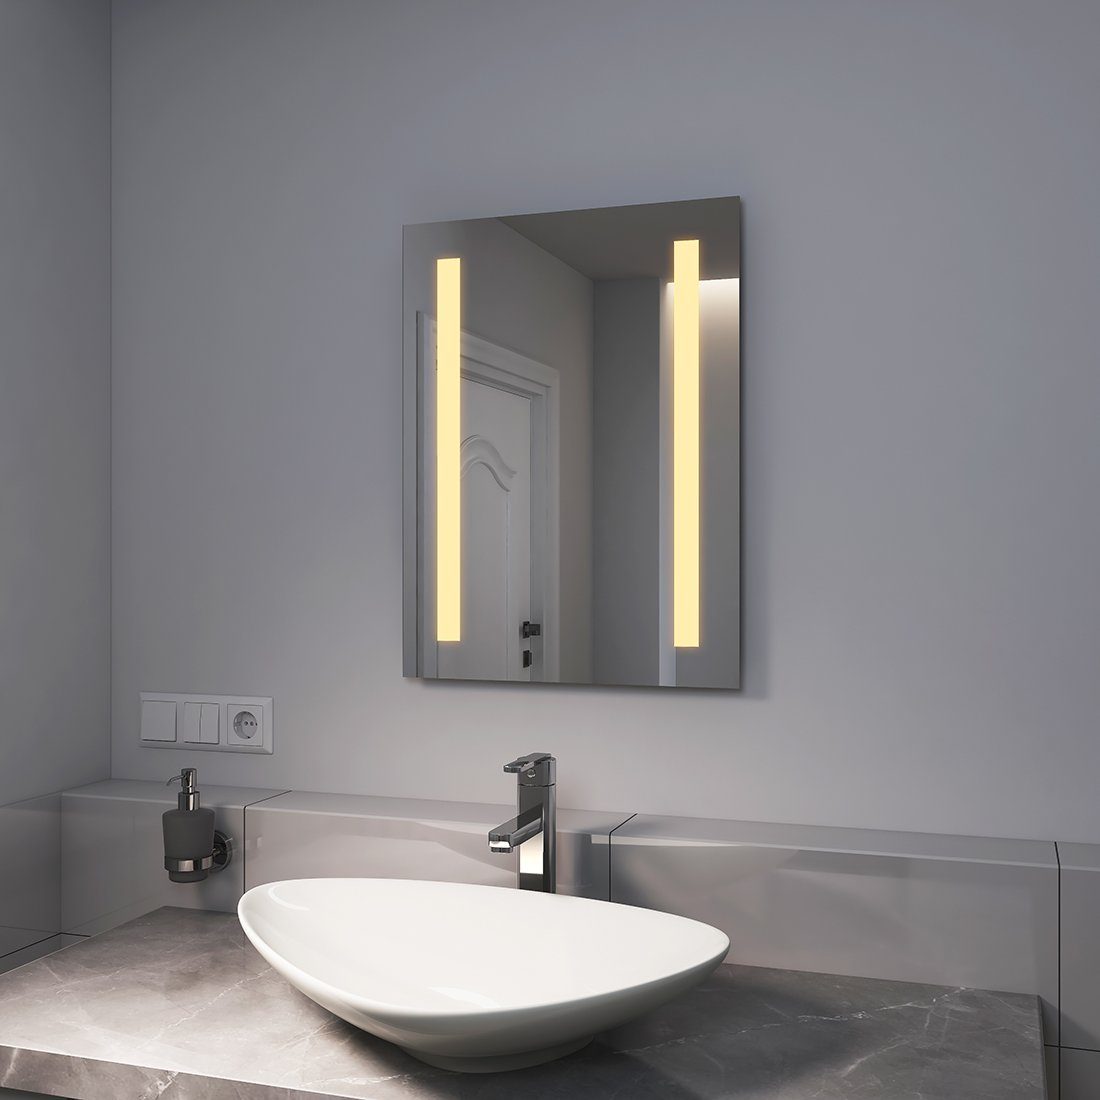 EMKE Badspiegel LED Wandspiegel, Beleuchtung Badspiegel kaltweiß Badezimmerspiegel oder mit Warmweißer